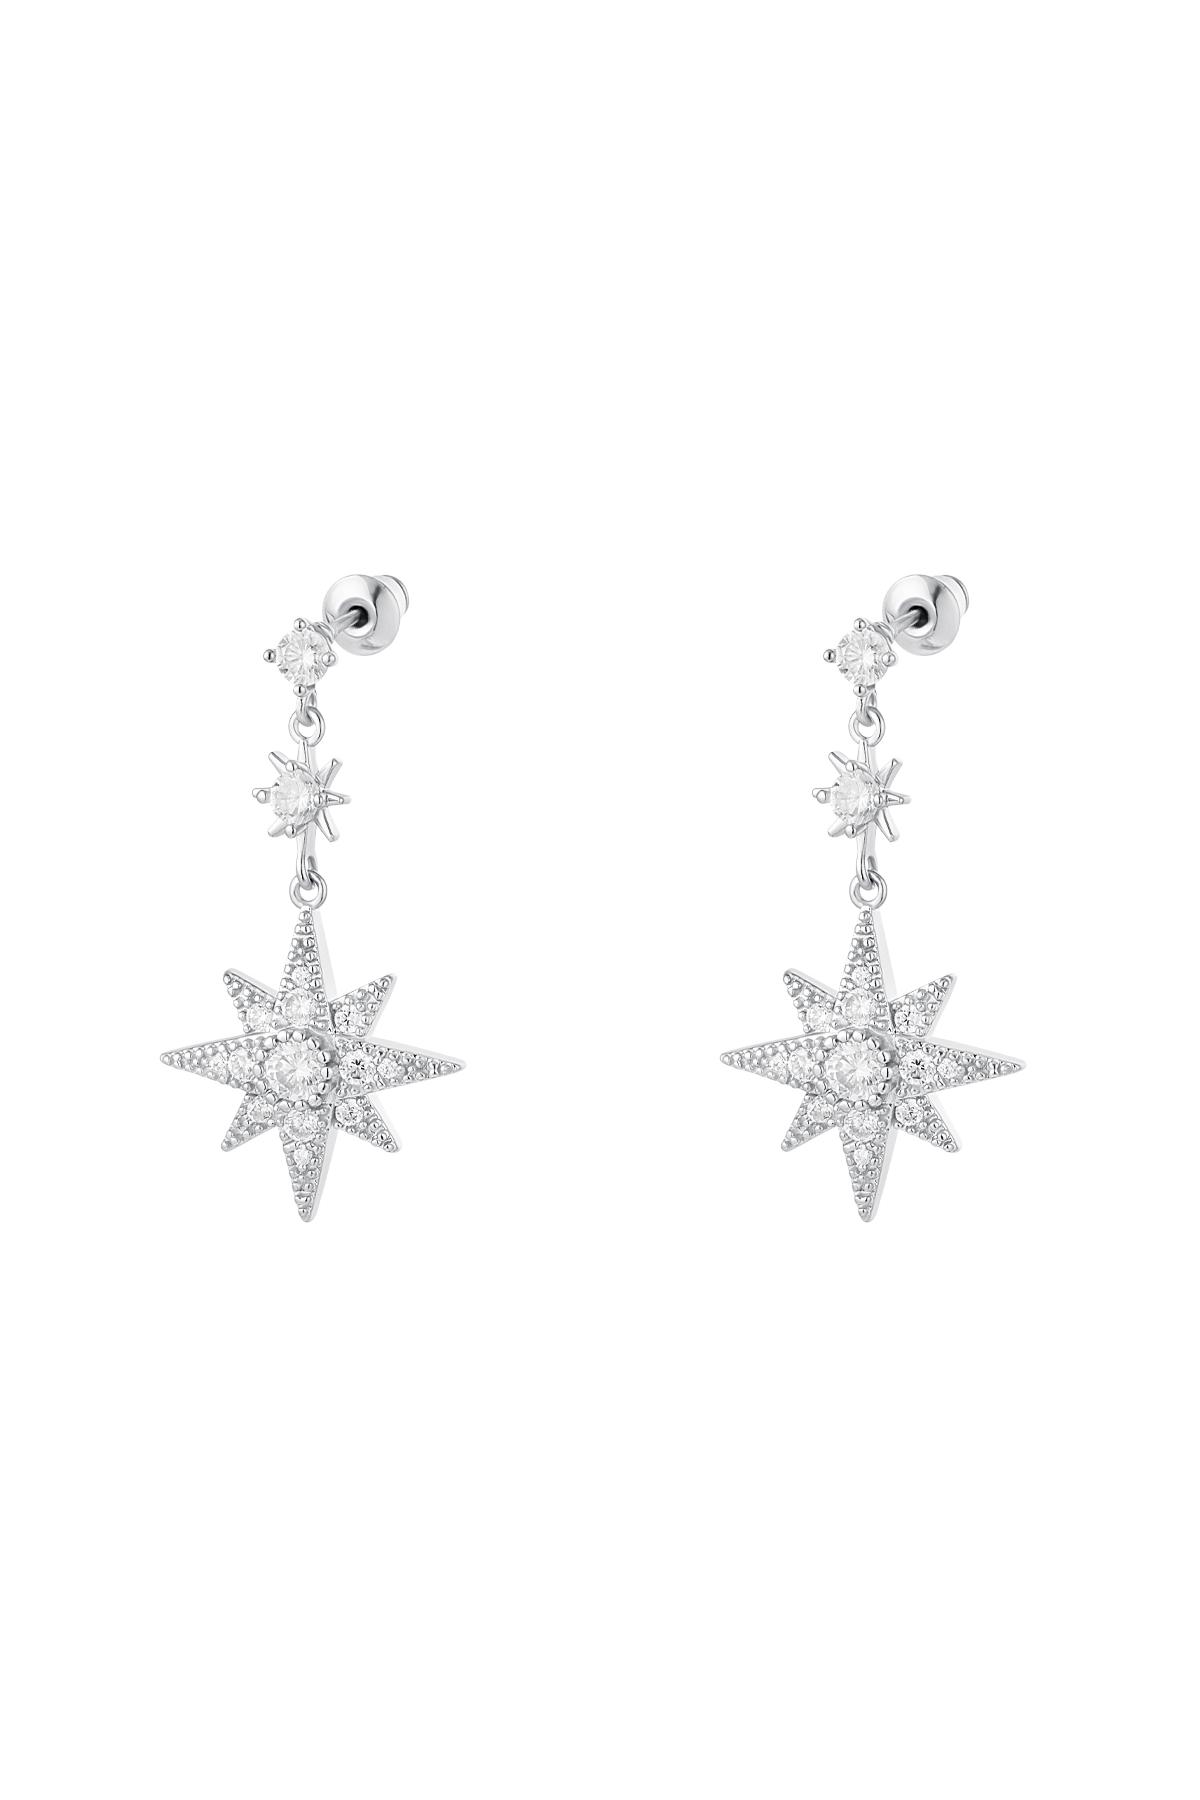 Ohrringe Sterne - Kollektion Sparkle Silber Kupfer h5 